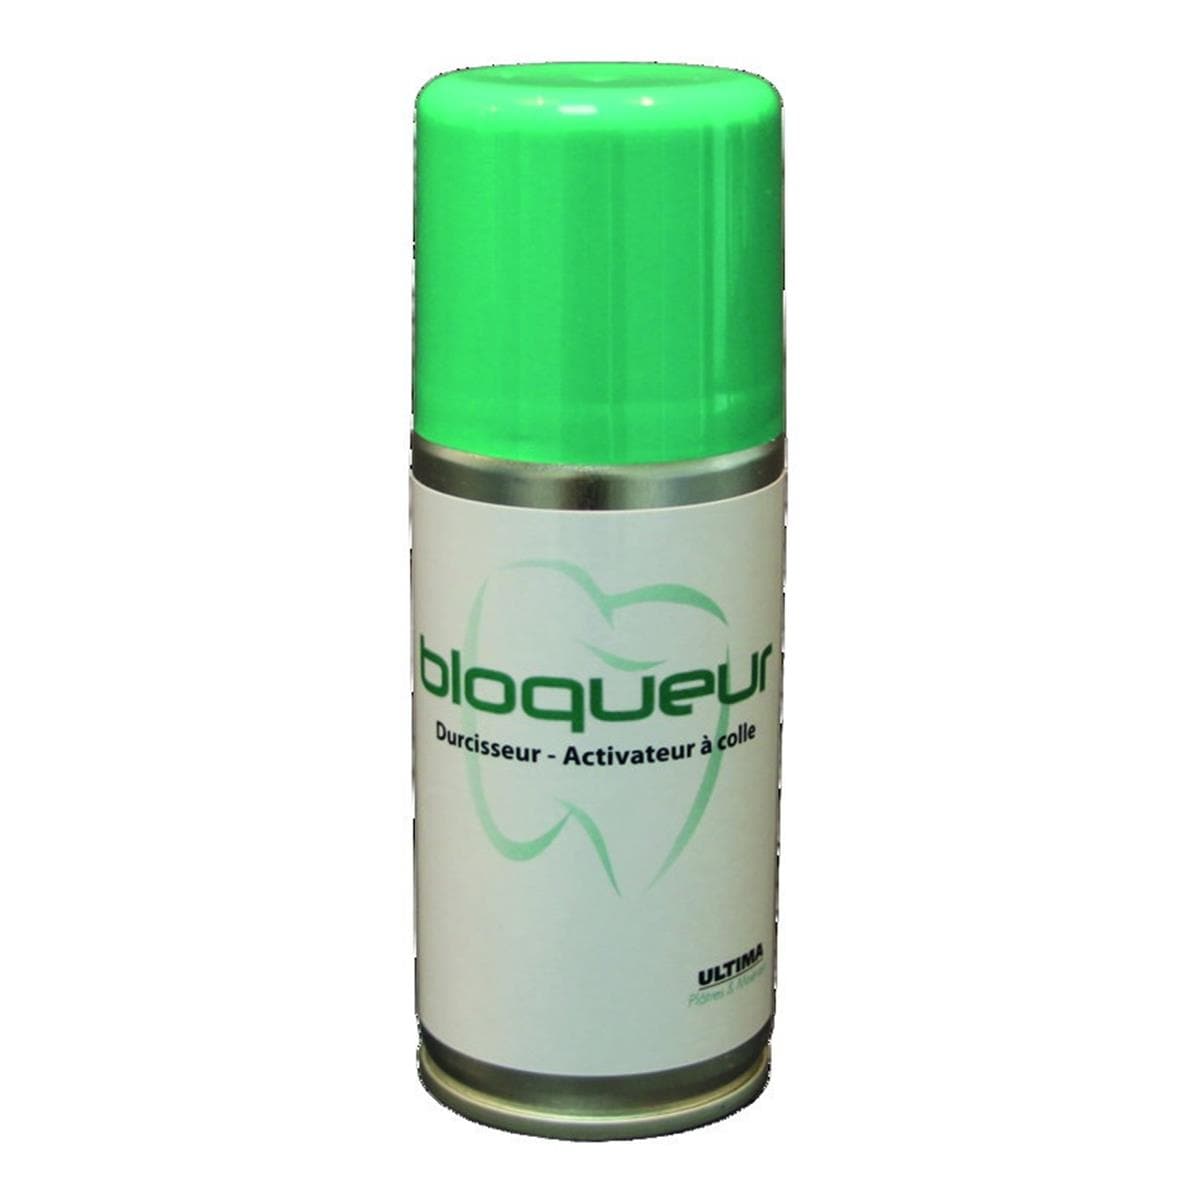 Bloqueur ULTIMA - Arosol - Le spray de 100 ml